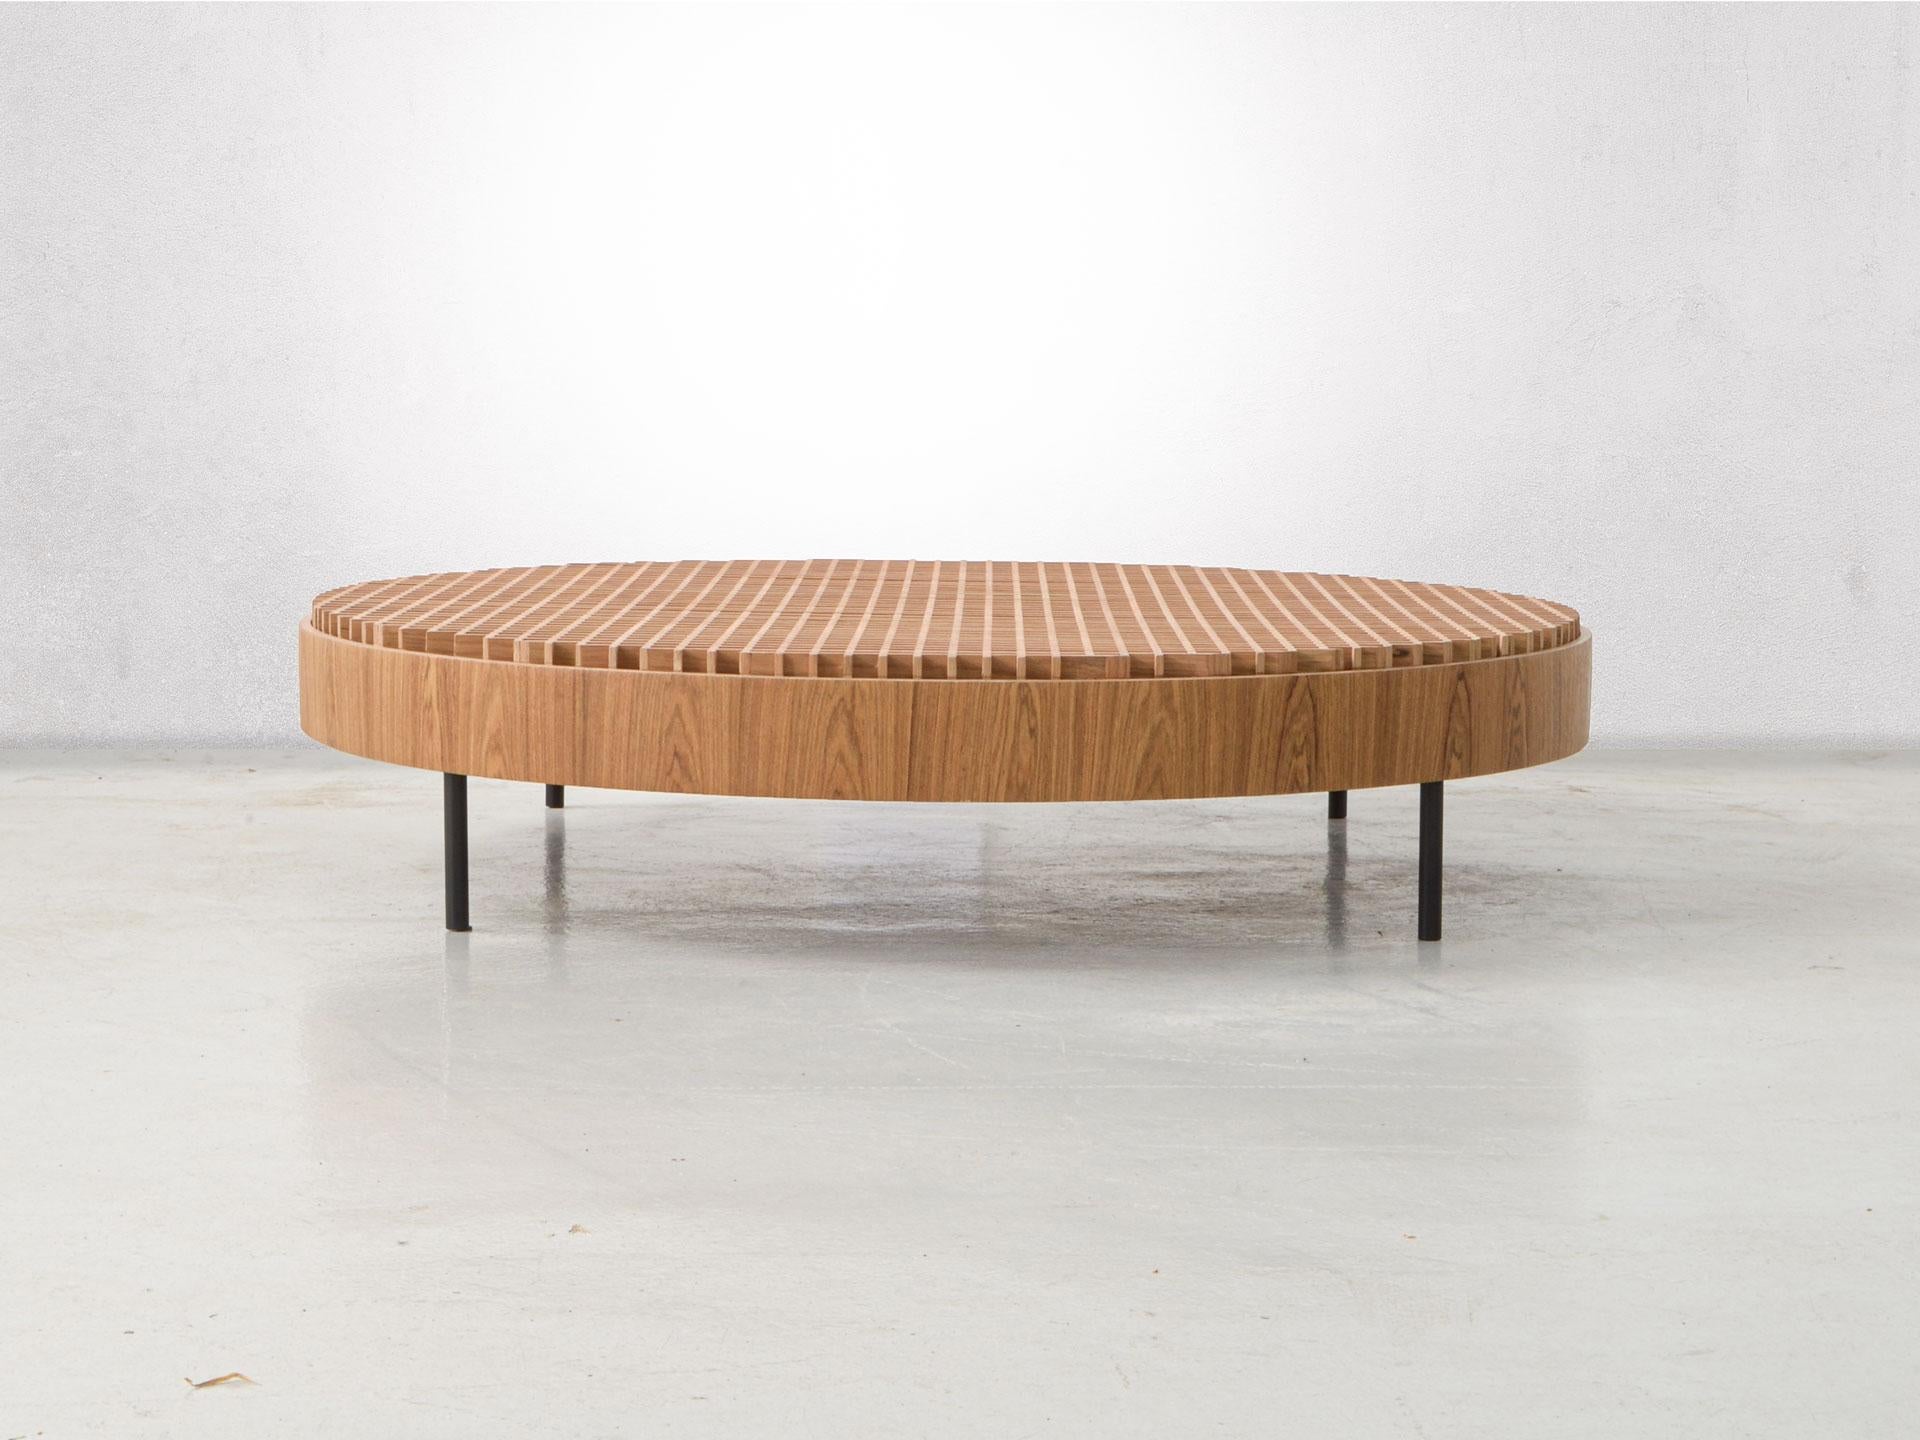 La magnifique table basse Mineira a été conçue par Ronald Sasson en 2020. 
Les lignes simples du design minimaliste combinées aux détails soignés de la menuiserie du plateau donnent beaucoup de caractère à cette pièce exceptionnelle. 

La